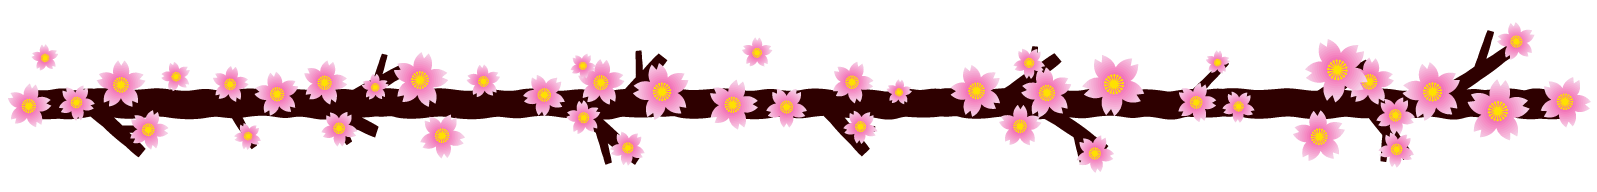 桜の花ライン 罫線イラスト 枝に咲いた桜 桜 4月 ライン 罫線 素材のプチッチ